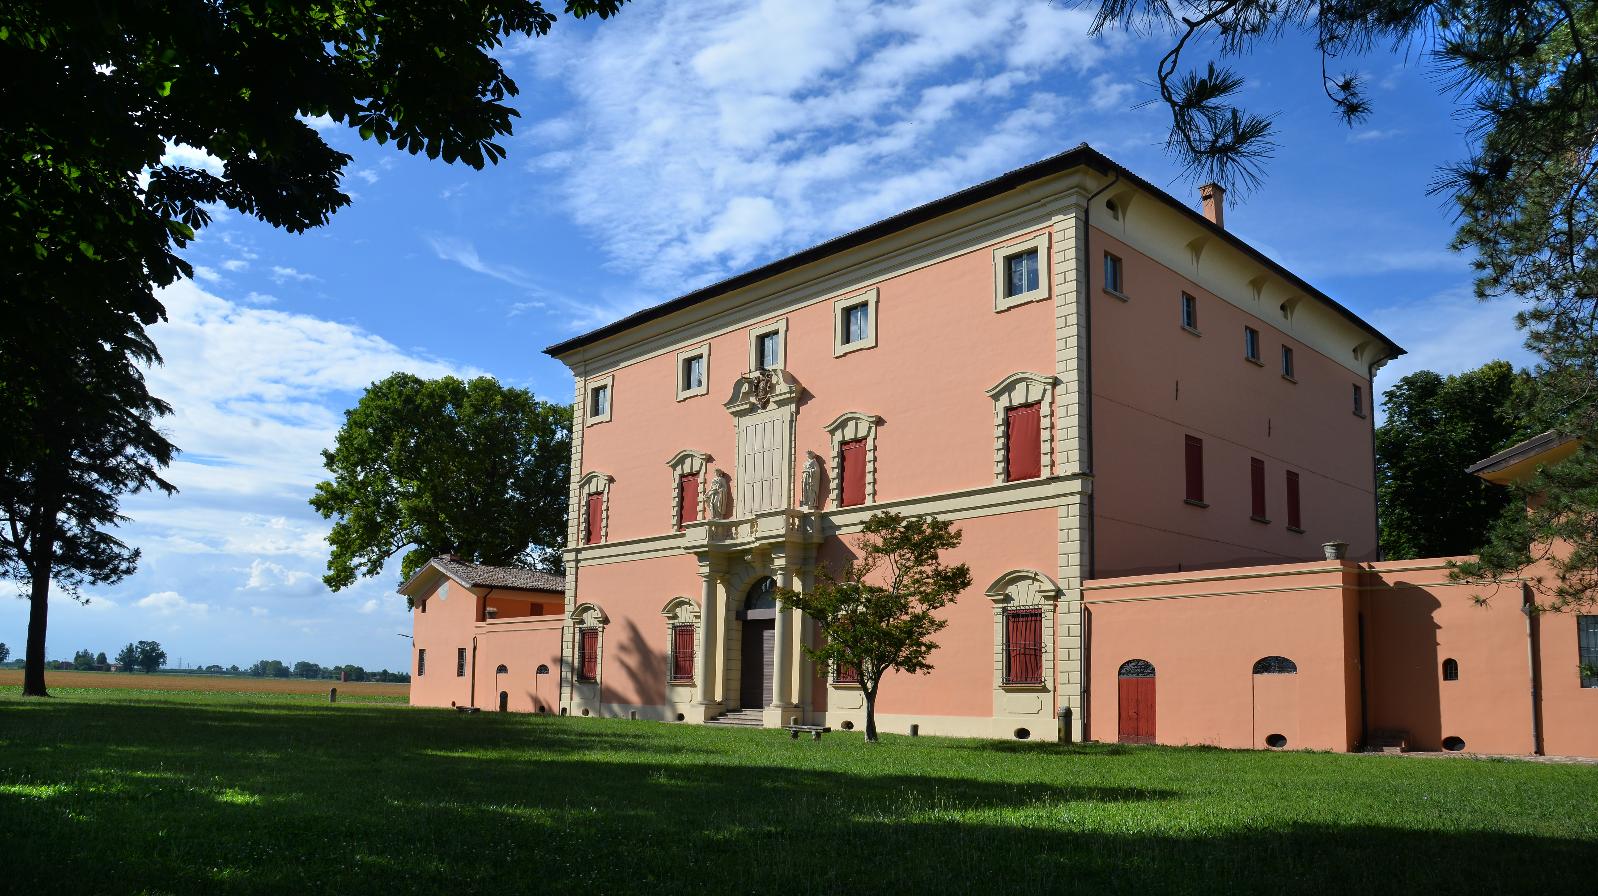 Villa Certani, Budrio - foto dell'archivio del comune di Budrio